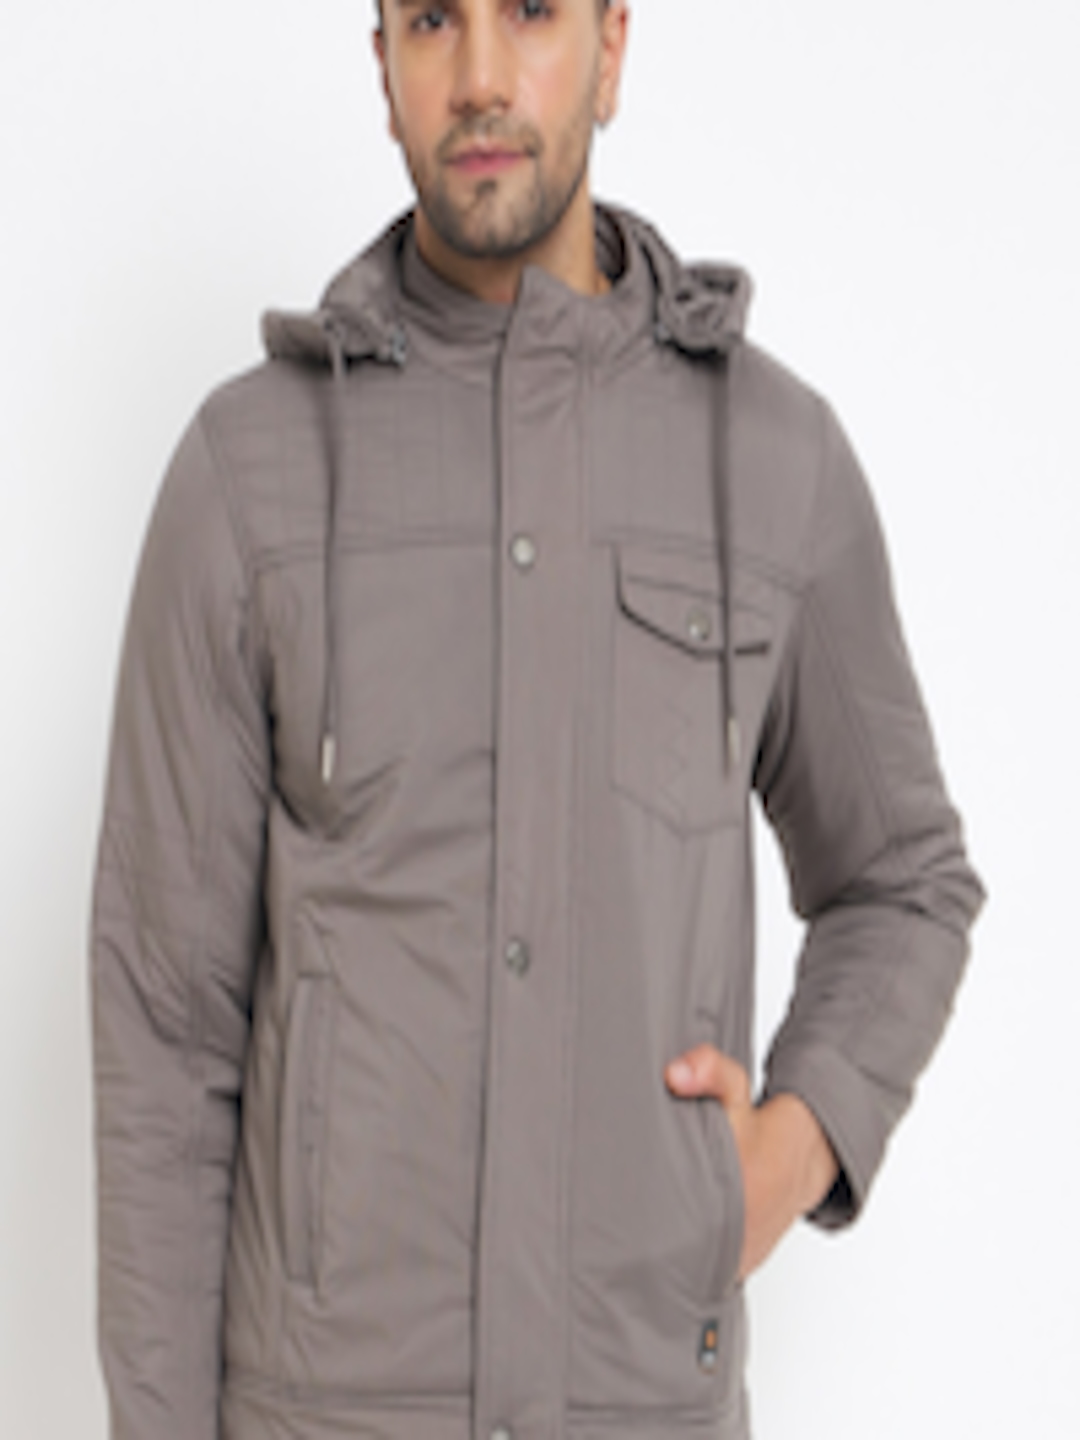 Buy Duke Hooded Long Sleeves Padded Jacket - Jackets for Men 26267872 ...